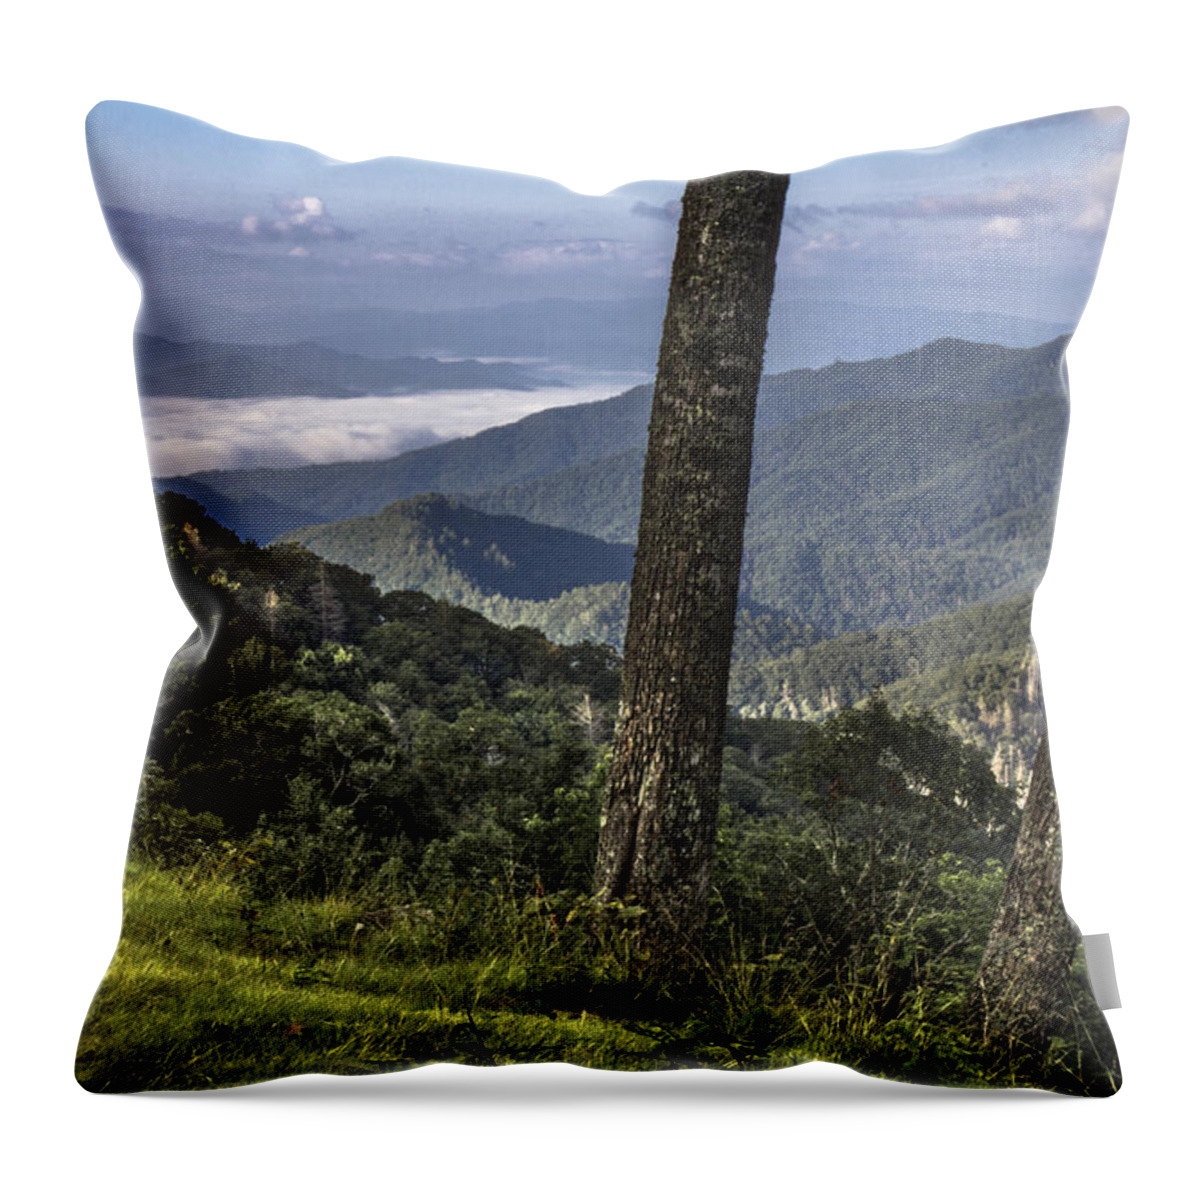 Smoky Mountains Throw Pillow featuring the photograph Smoky Mountain Ridge by John McGraw